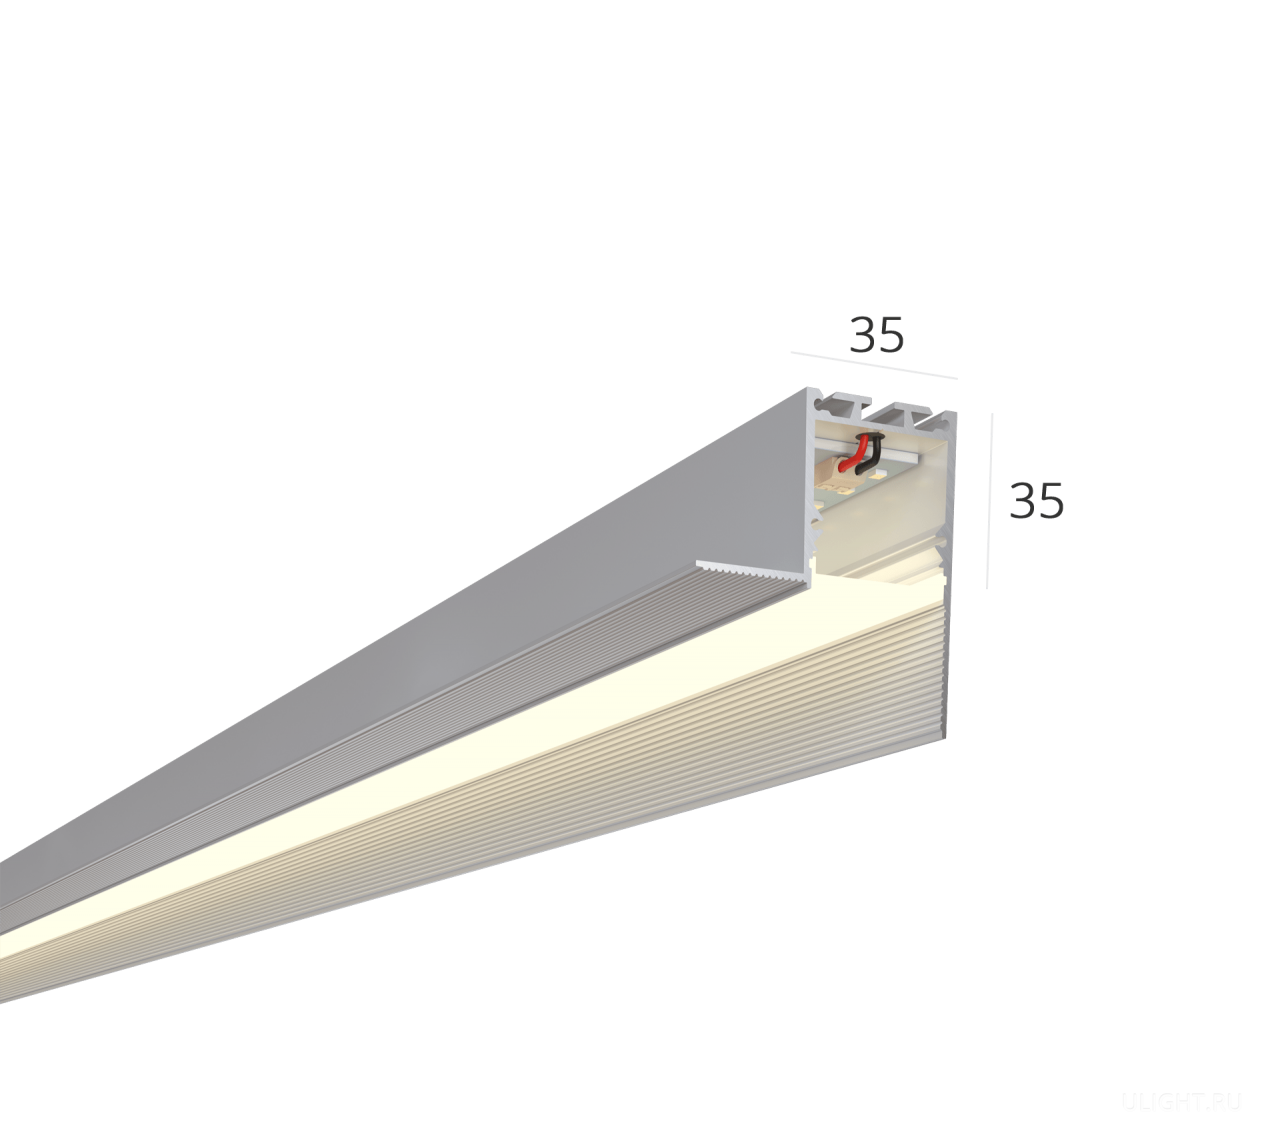 Безрамочный профиль под шпаклевку (устанавливается на стыке стены и потолка). 
Благодаря отсутствию рамки и сплошному рассеивателю на потолке видна только световая линия без стыков.


